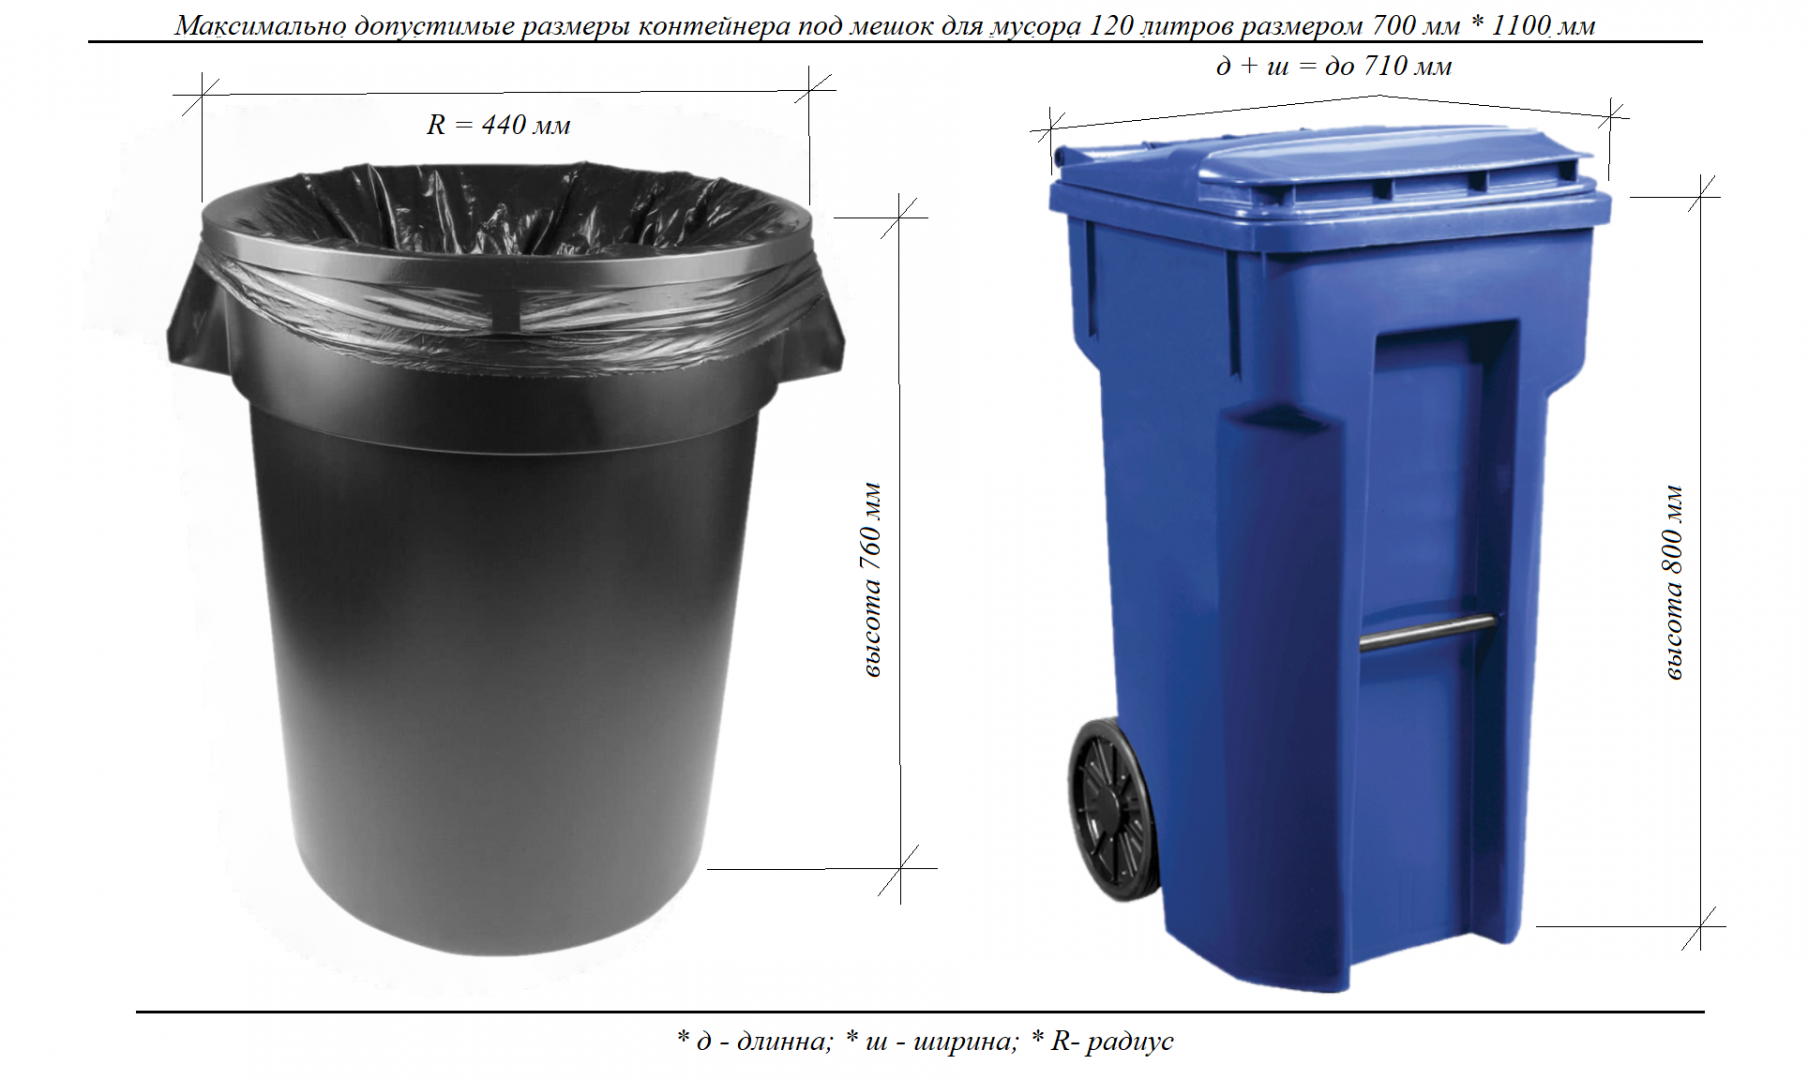 переработка мусора, переработка, утилизация, пластиковые отходы .